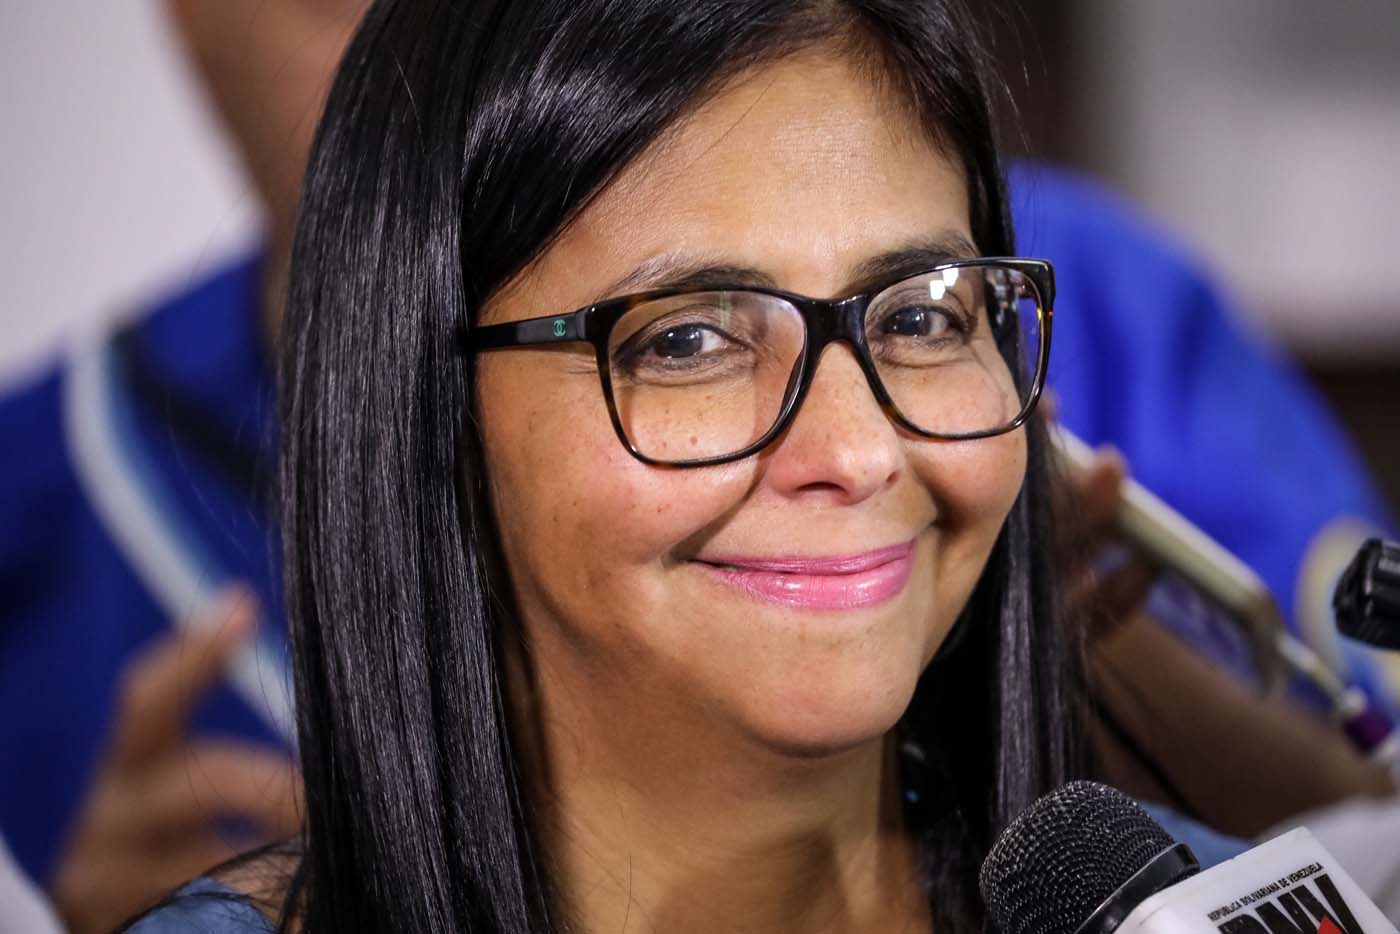 Delcy Eloína propone dar clases de historia a la oposición venezolana durante el diálogo (video)